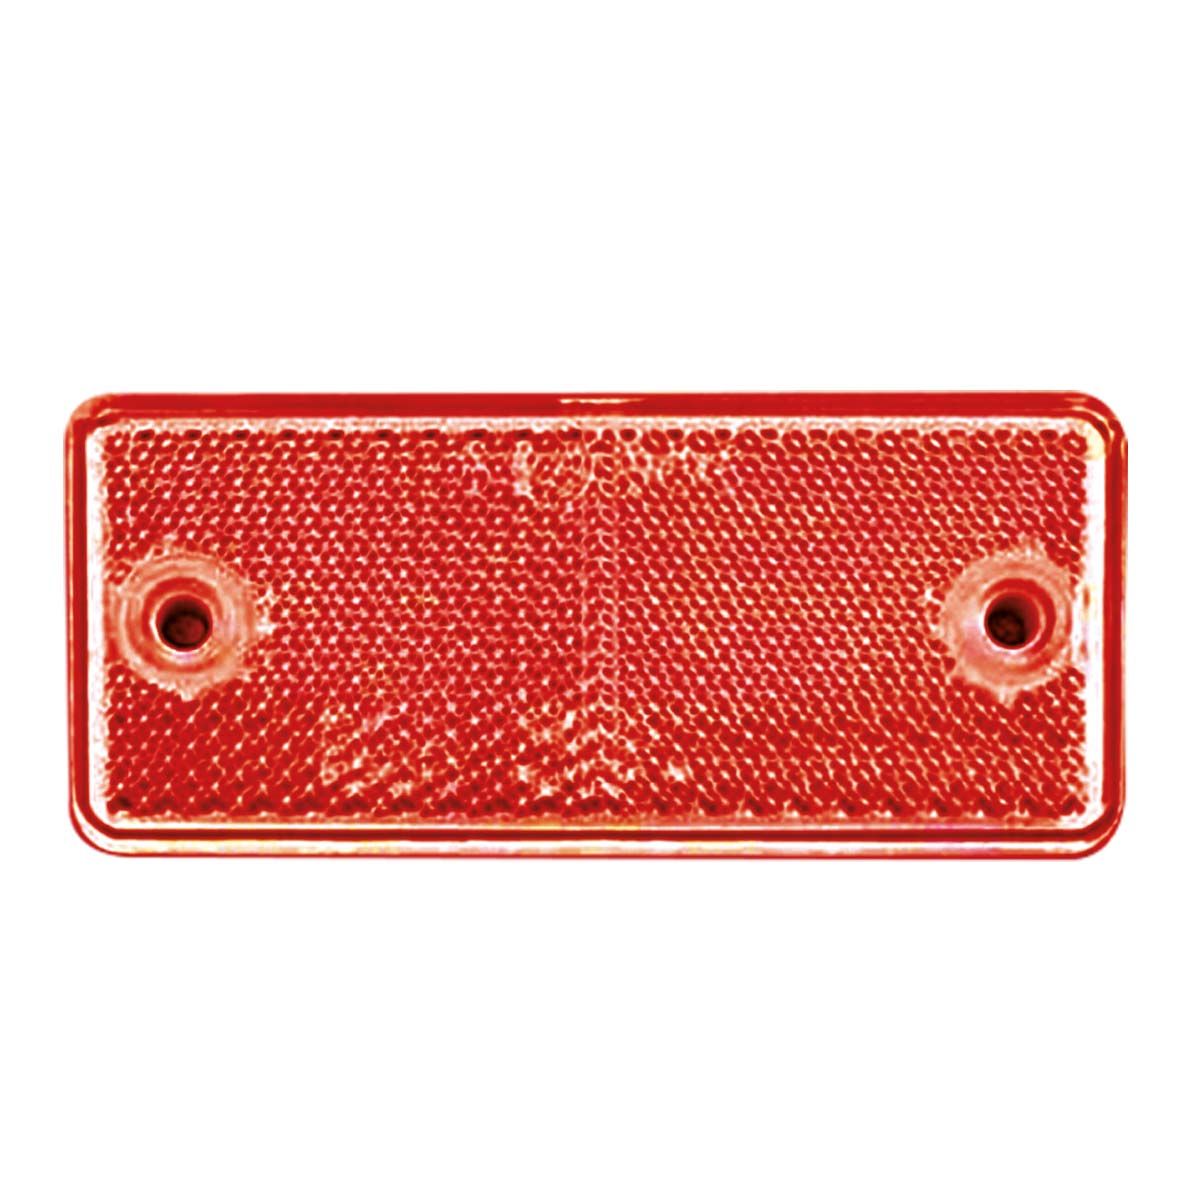 Kedi Gözü Reflektör 100 x 45 mm Kırmızı (2'li paket)